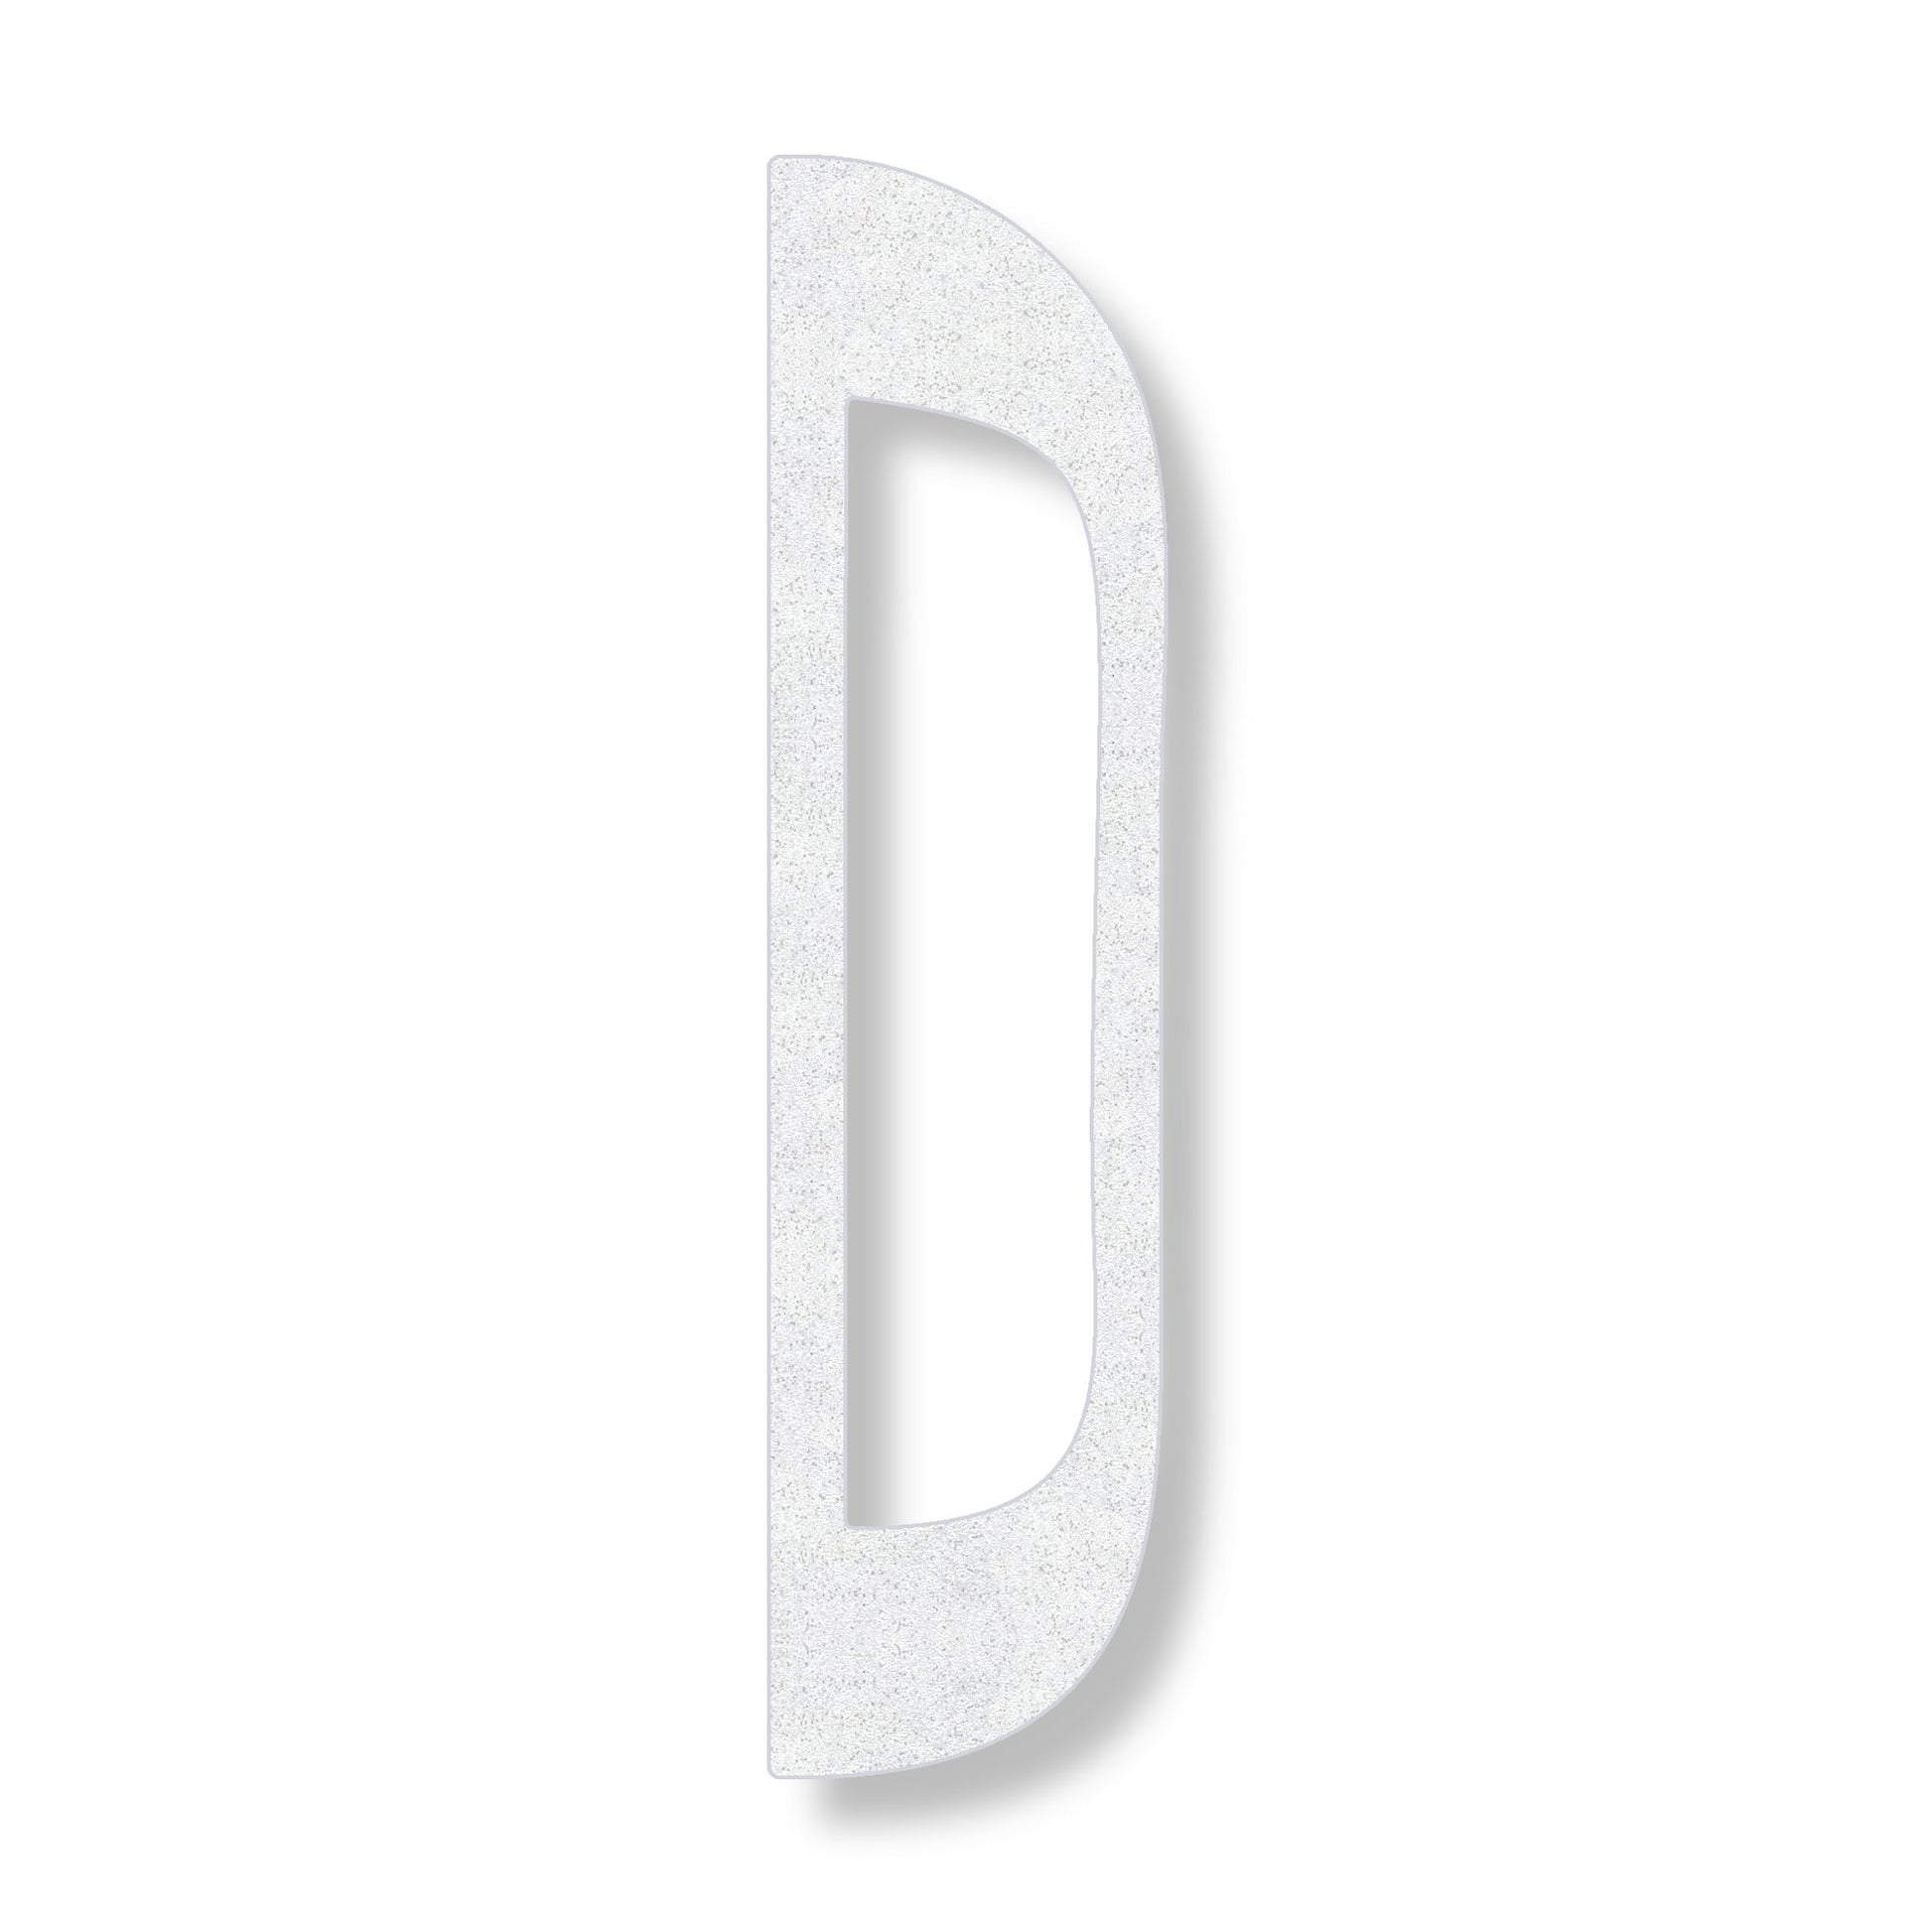 Letter D in white